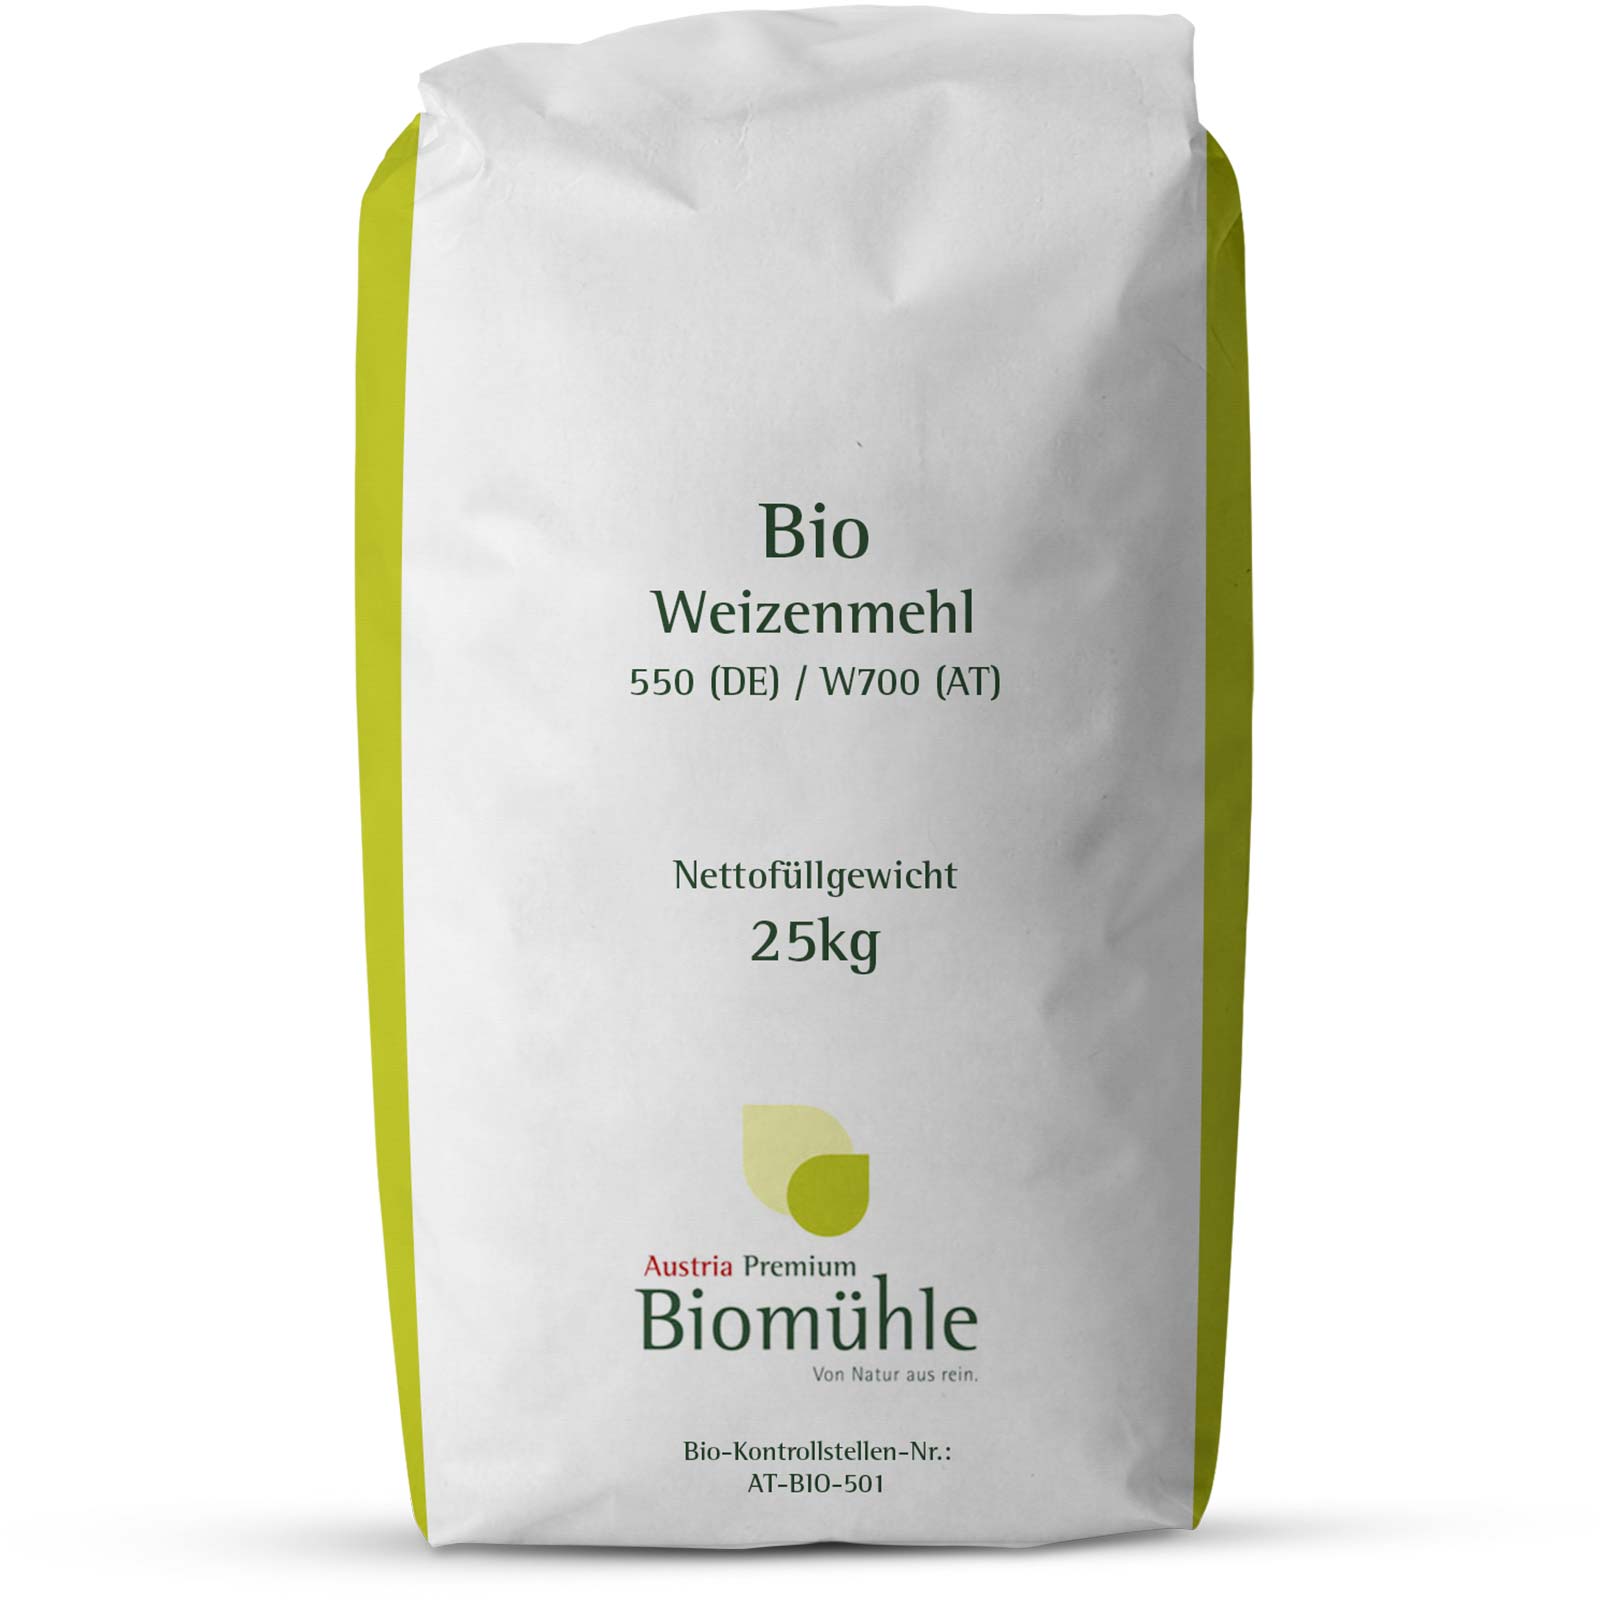 Bio búzaliszt 550 / W700 típus 25 kg